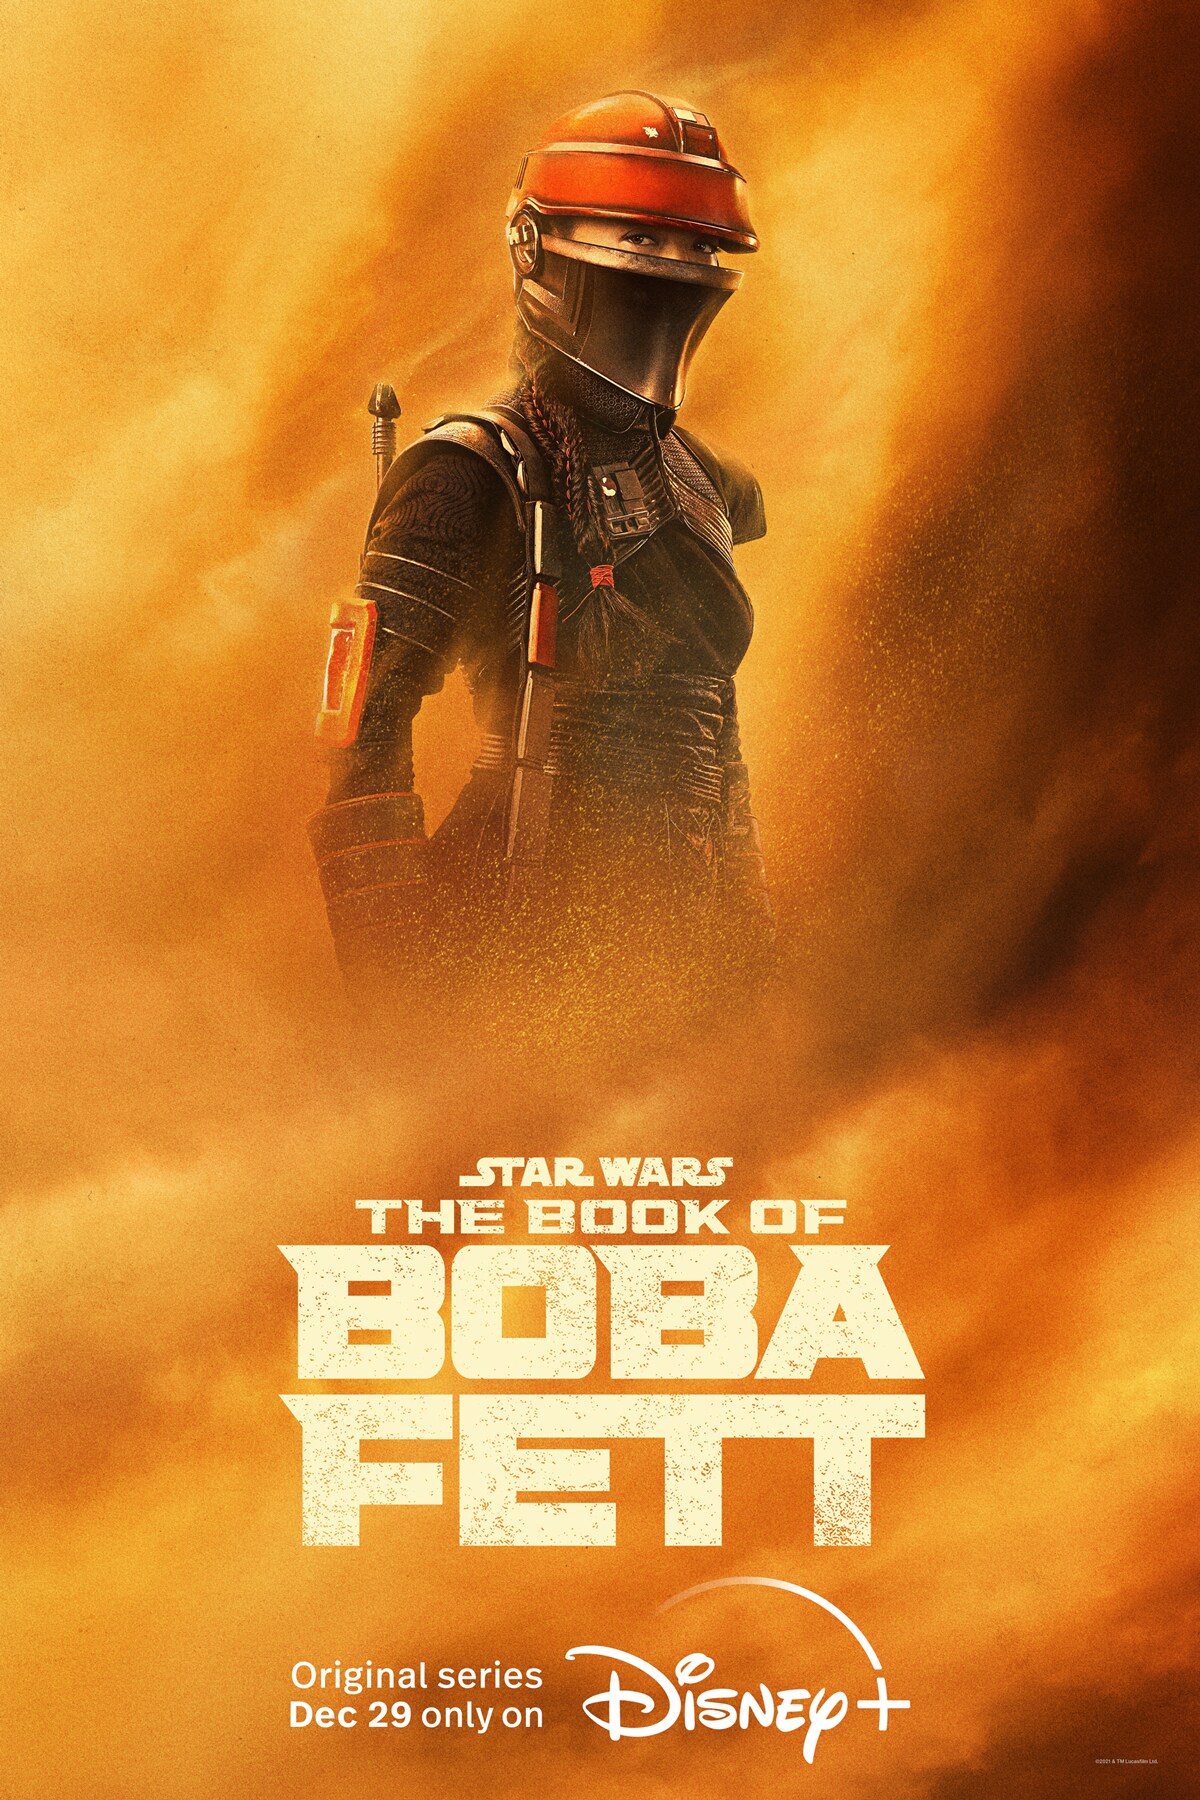 Dành cho các fan hâm mộ của Star Wars, hãy xem qua bộ sưu tập poster độc đáo của The Book of Boba Fett trên trang StarWars.com. Những ánh mắt sắc lẻm và vũ khí đầy uy lực sẽ khiến bạn phải trầm trồ kinh ngạc.